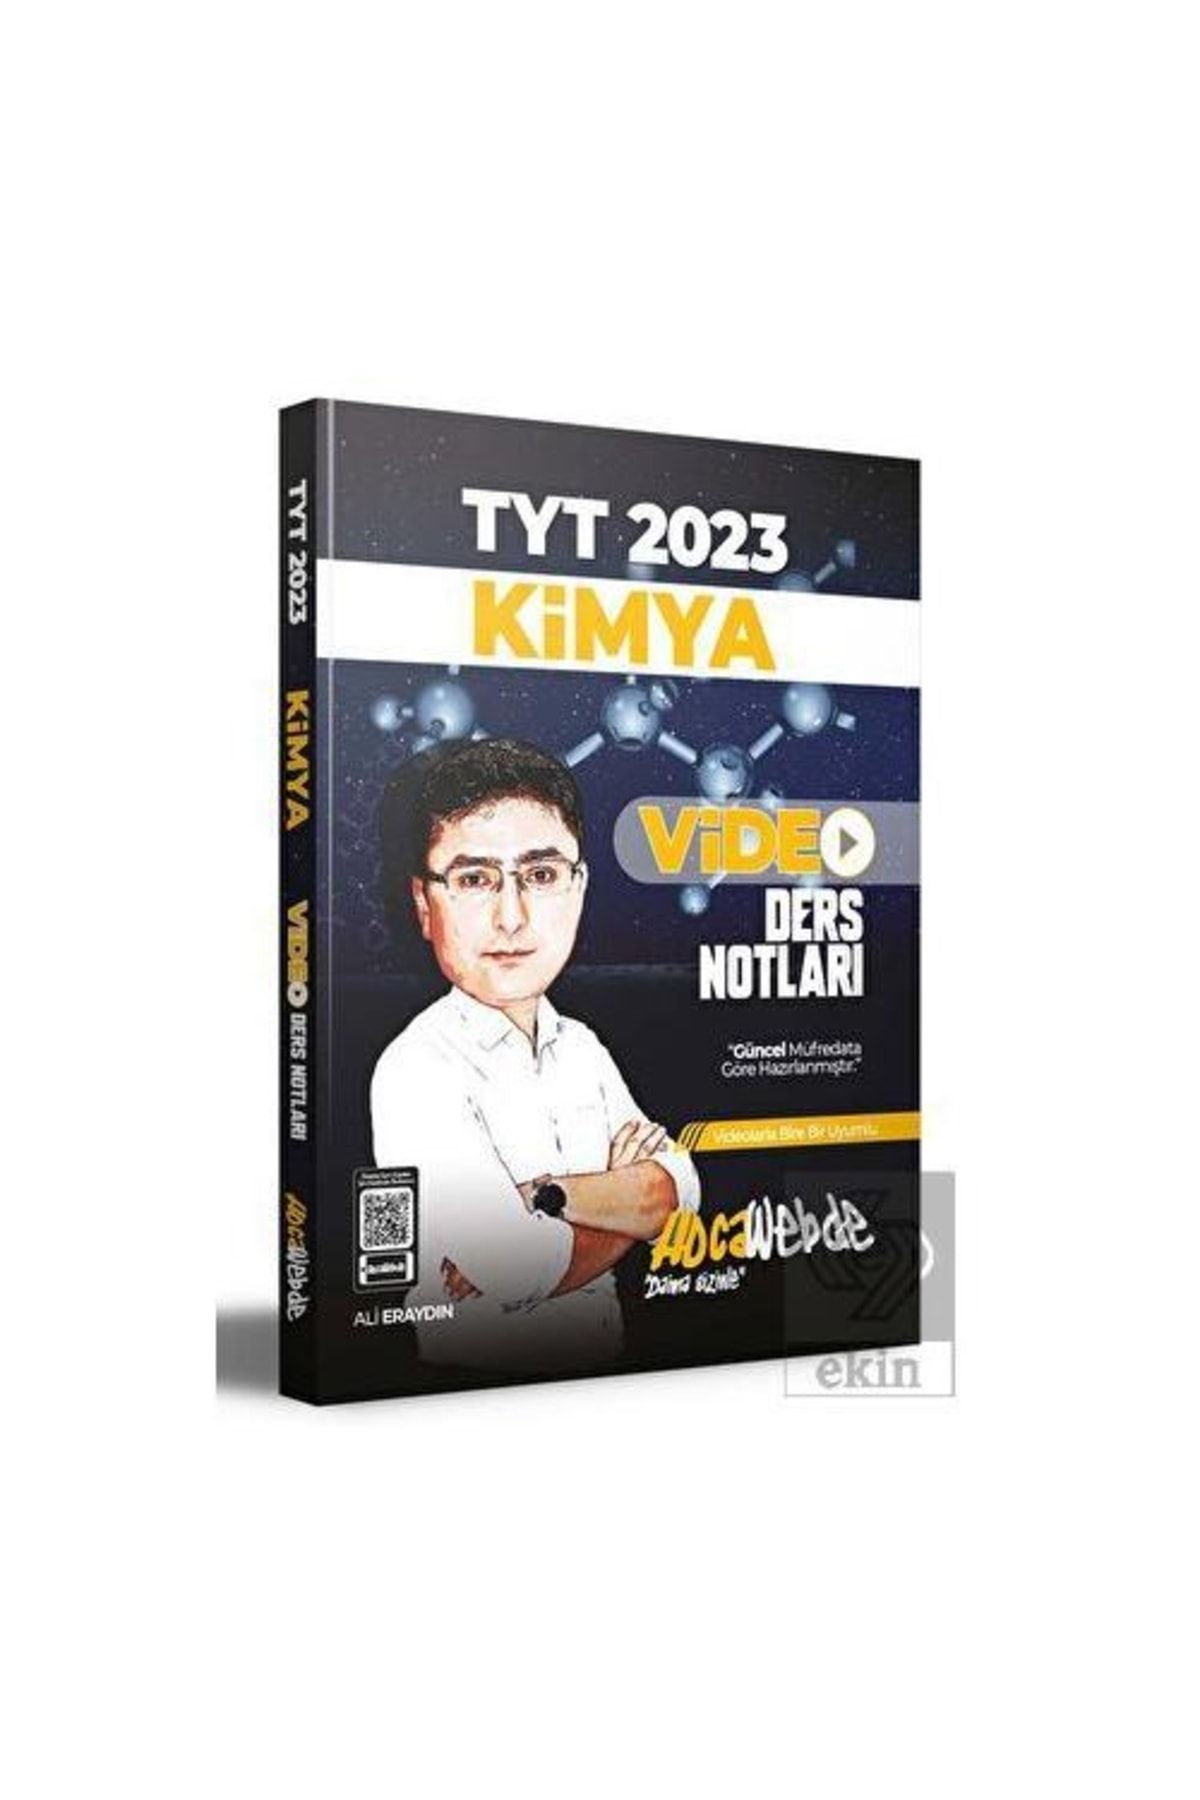 Hoca Webde 2023 Tyt Kimya Video Ders Notları Hocawebde Yayınl/